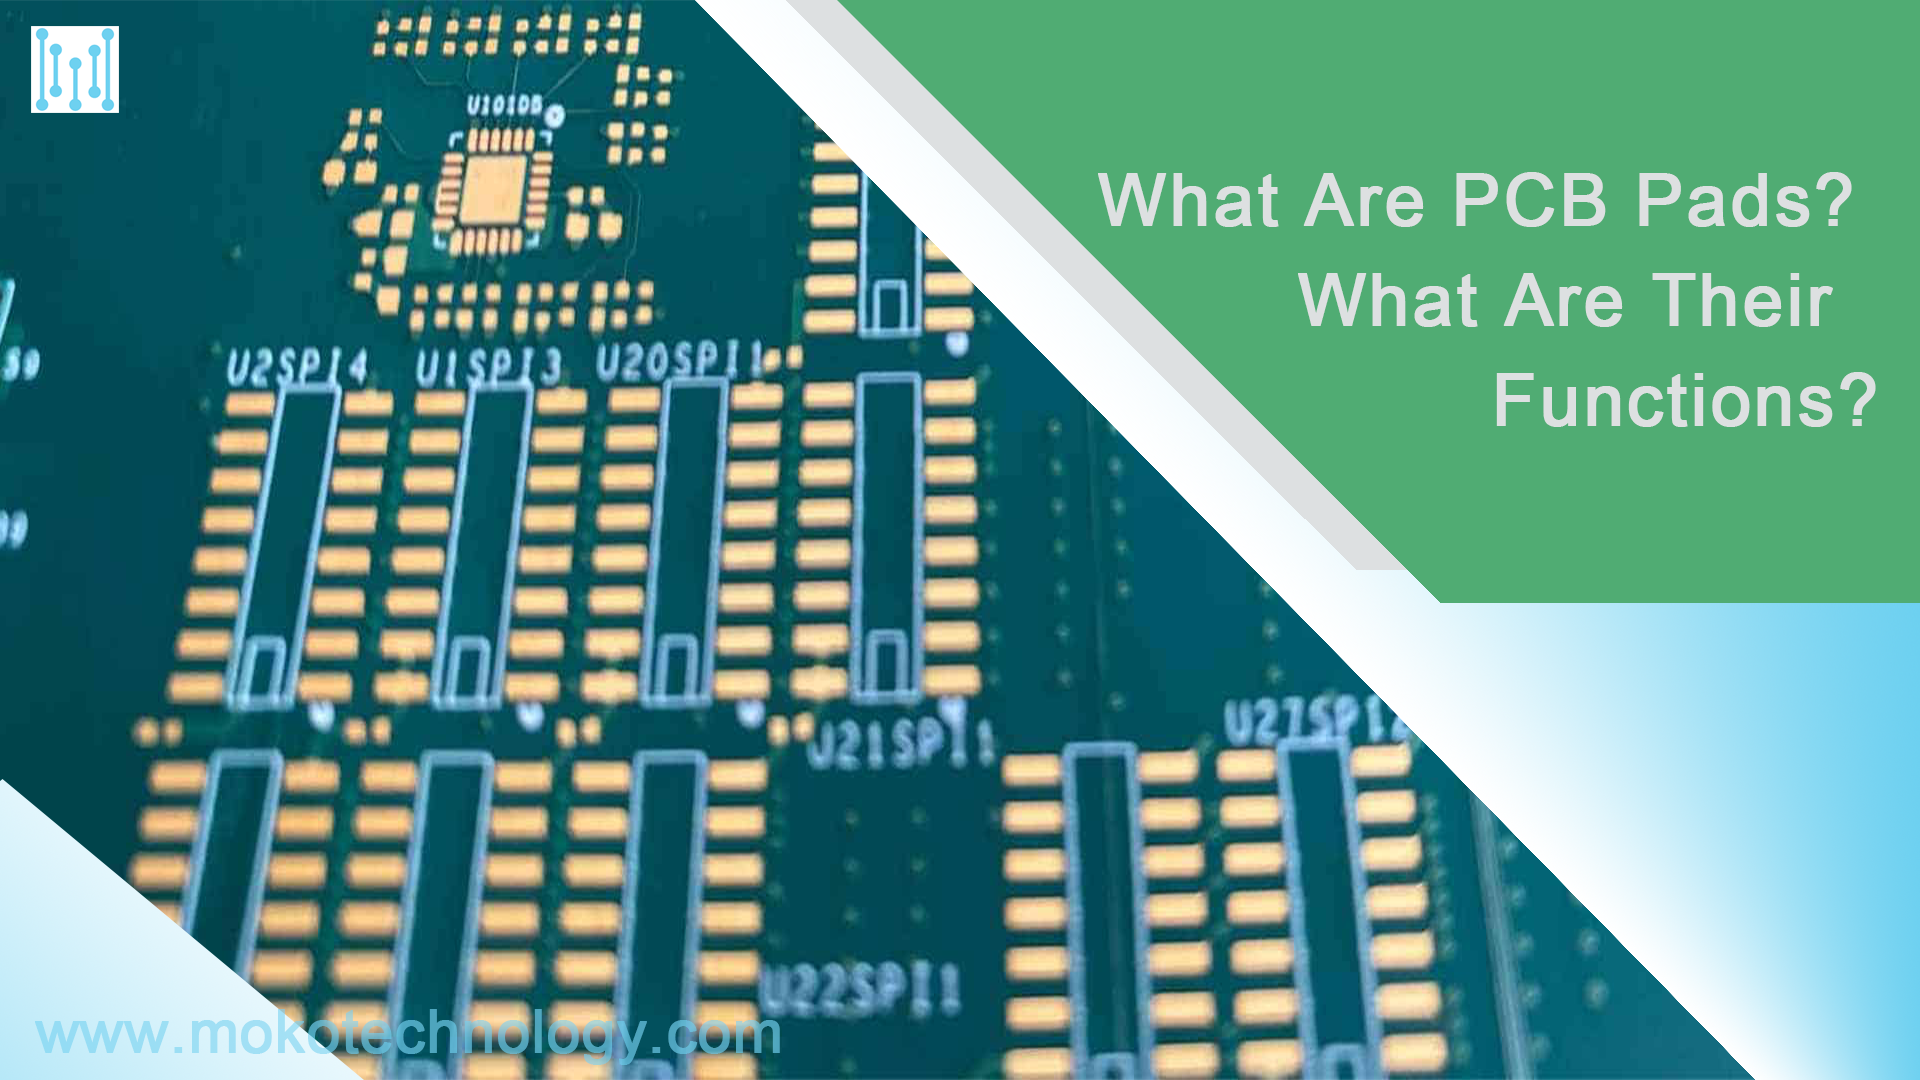 PCB pedleri nelerdir?